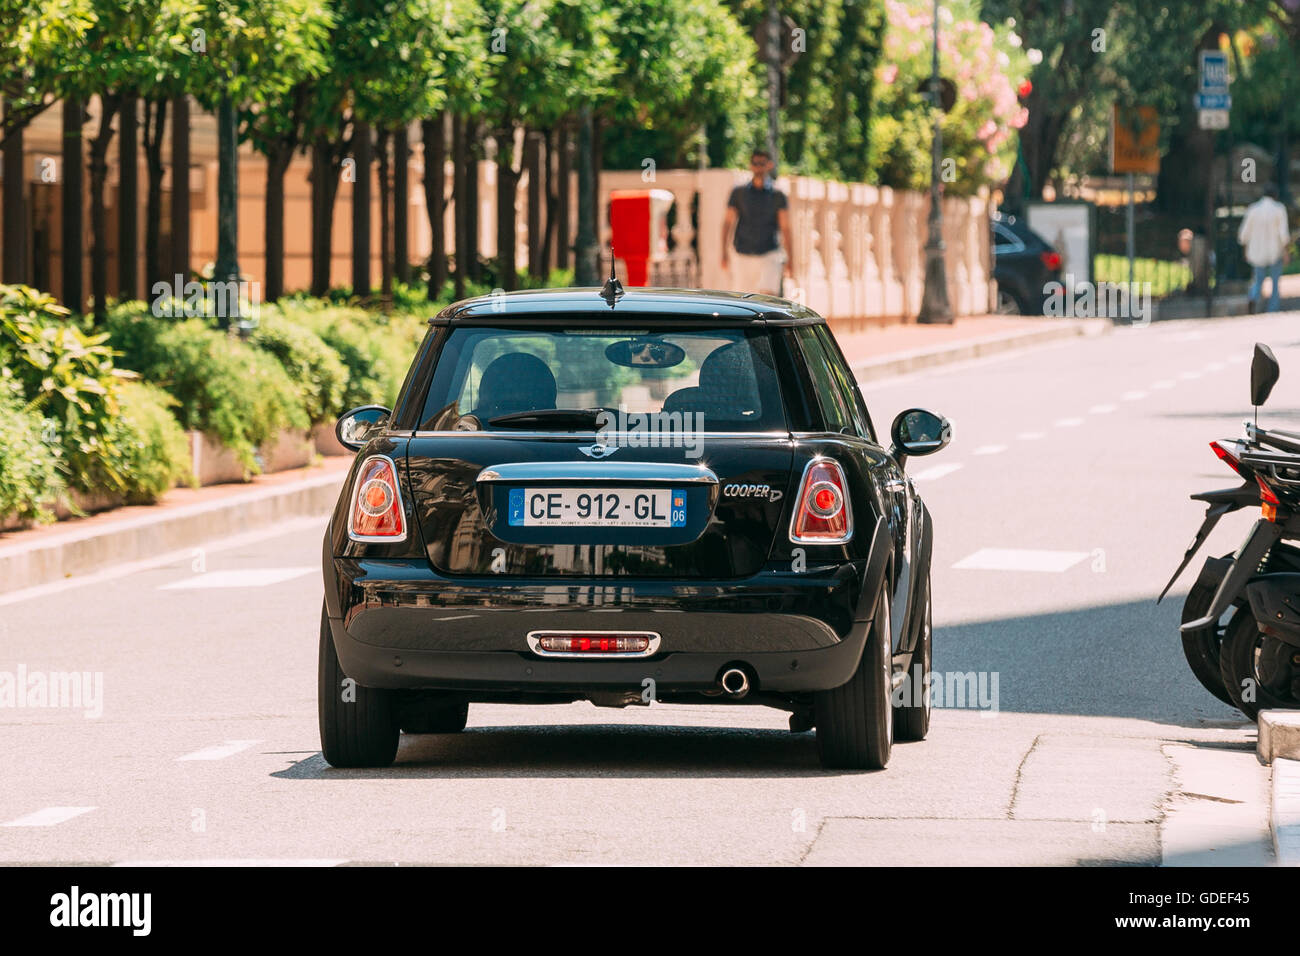 Monte-Carlo, Monaco - June 28, 2015: Black color Mini Cooper on street Stock Photo